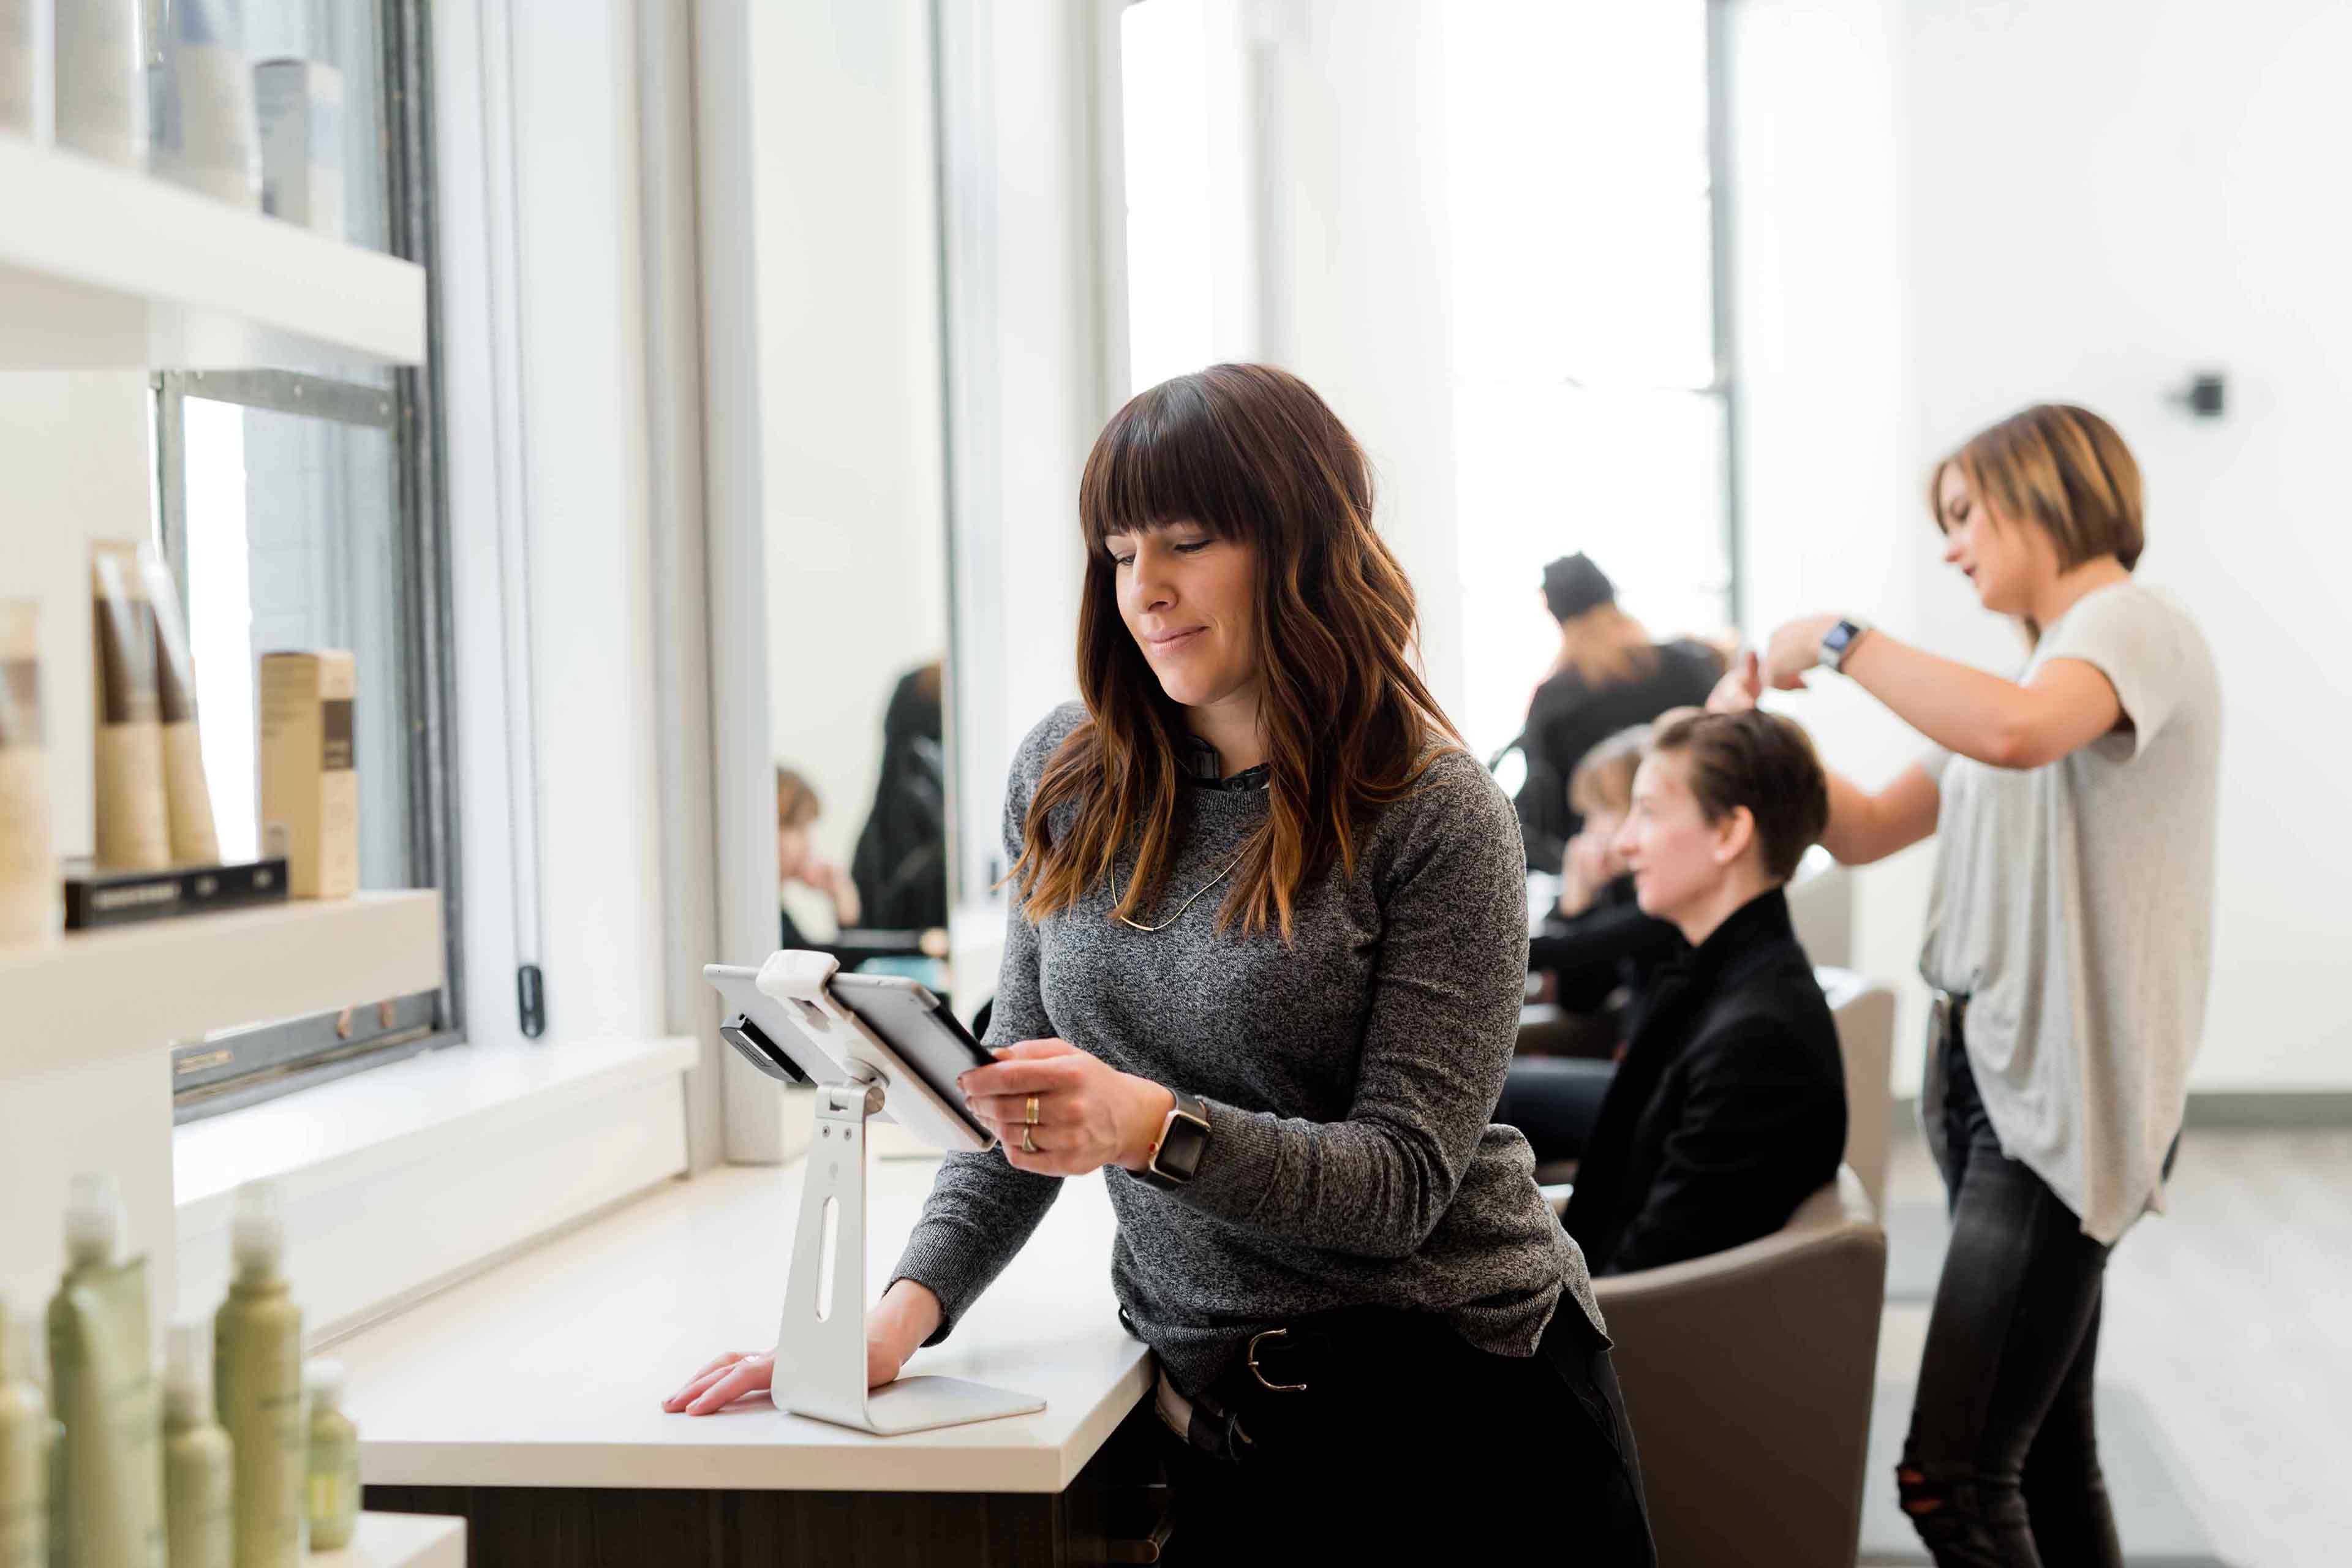 Dans un salon de coiffure, une personne utilise un appareil mobile à écran tactile pour développer sa petite entreprise